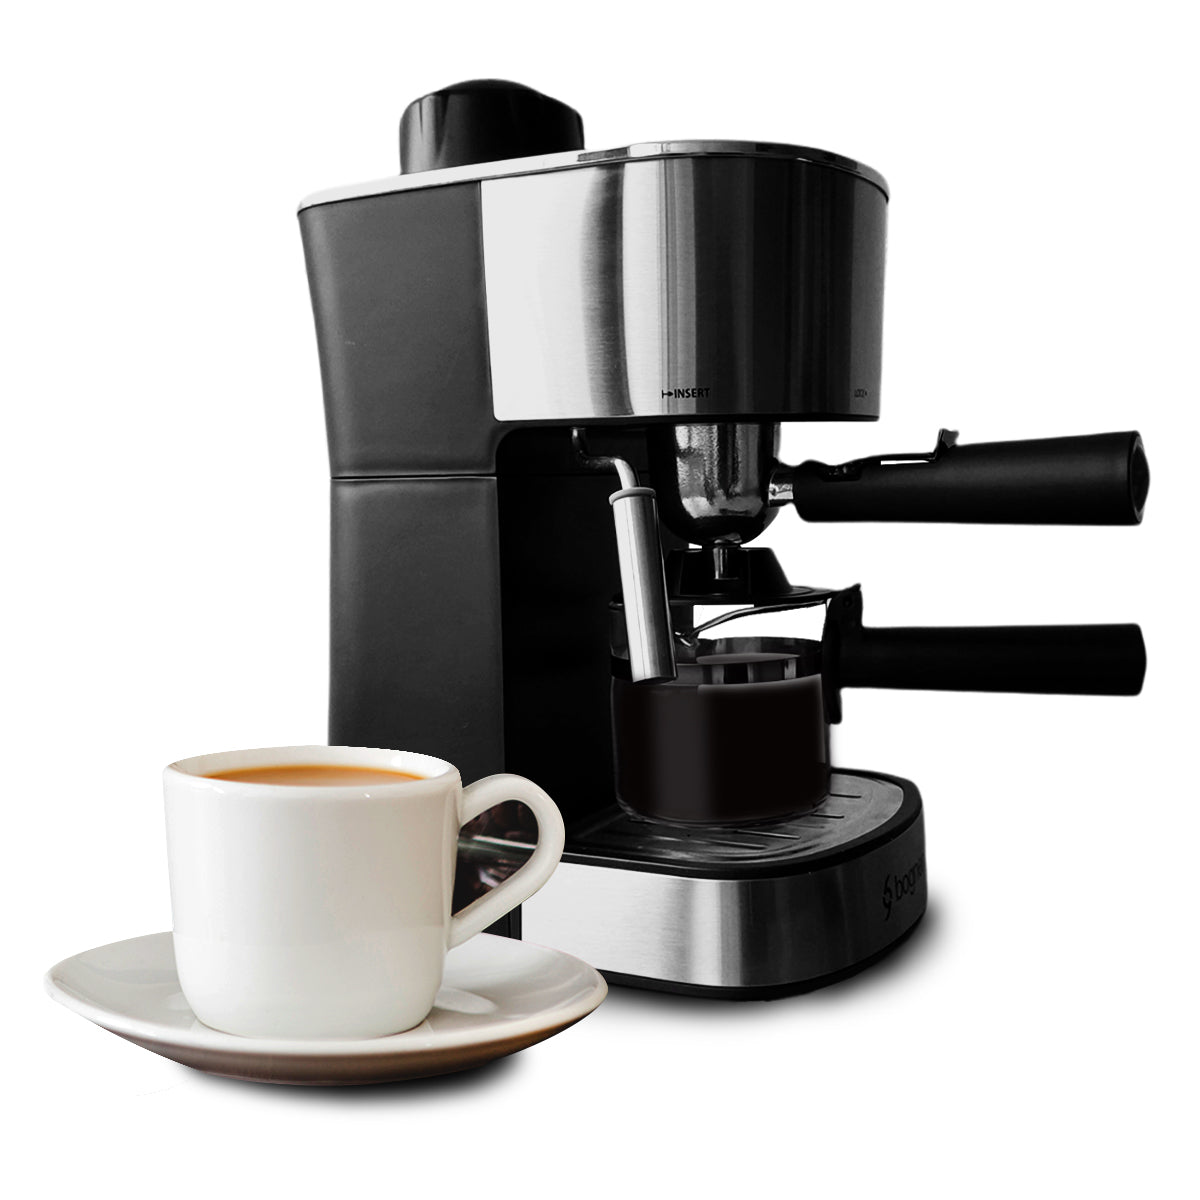 CAFIVER presenta la cafetera ideal para tu negocio